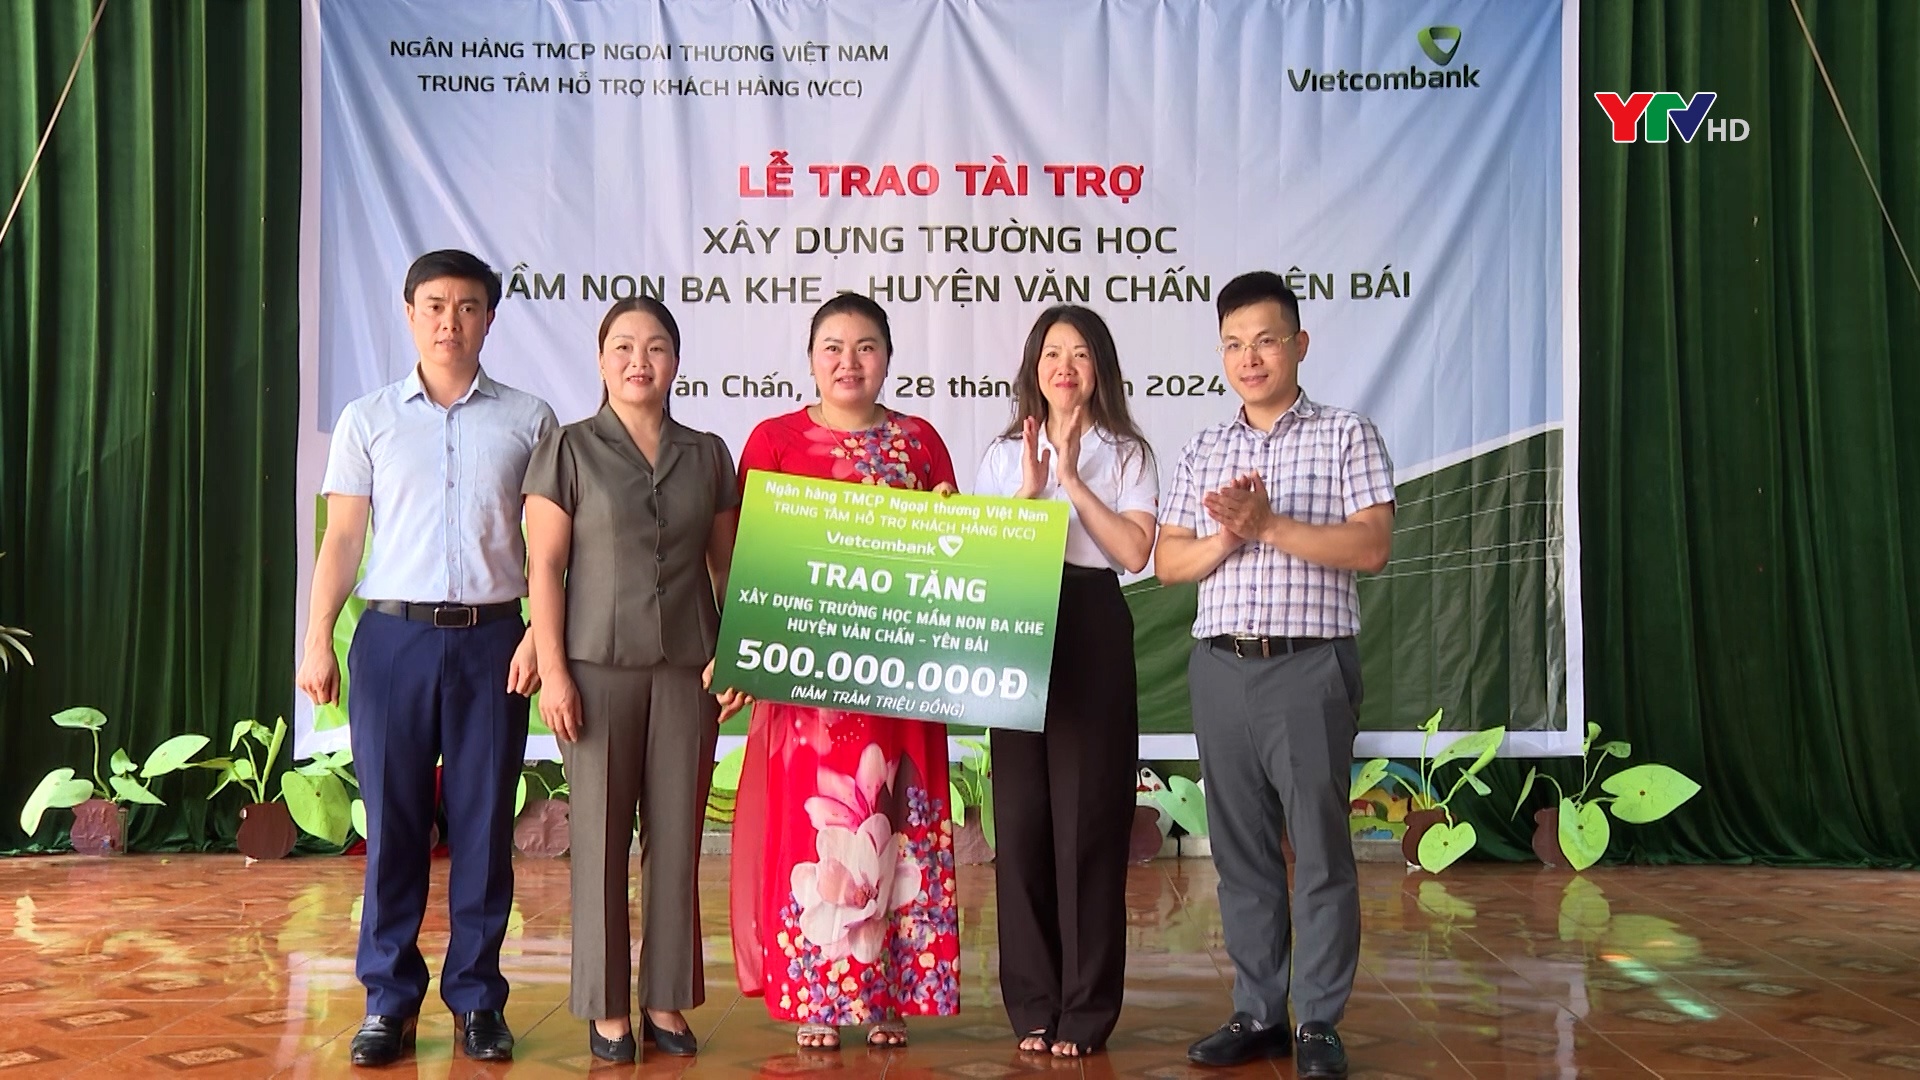 Trung tâm Hỗ trợ khách hàng Ngân hàng Vietcombank hỗ trợ 500 triệu đồng xây dựng 2 phòng học mầm non tại huyện Văn Chấn